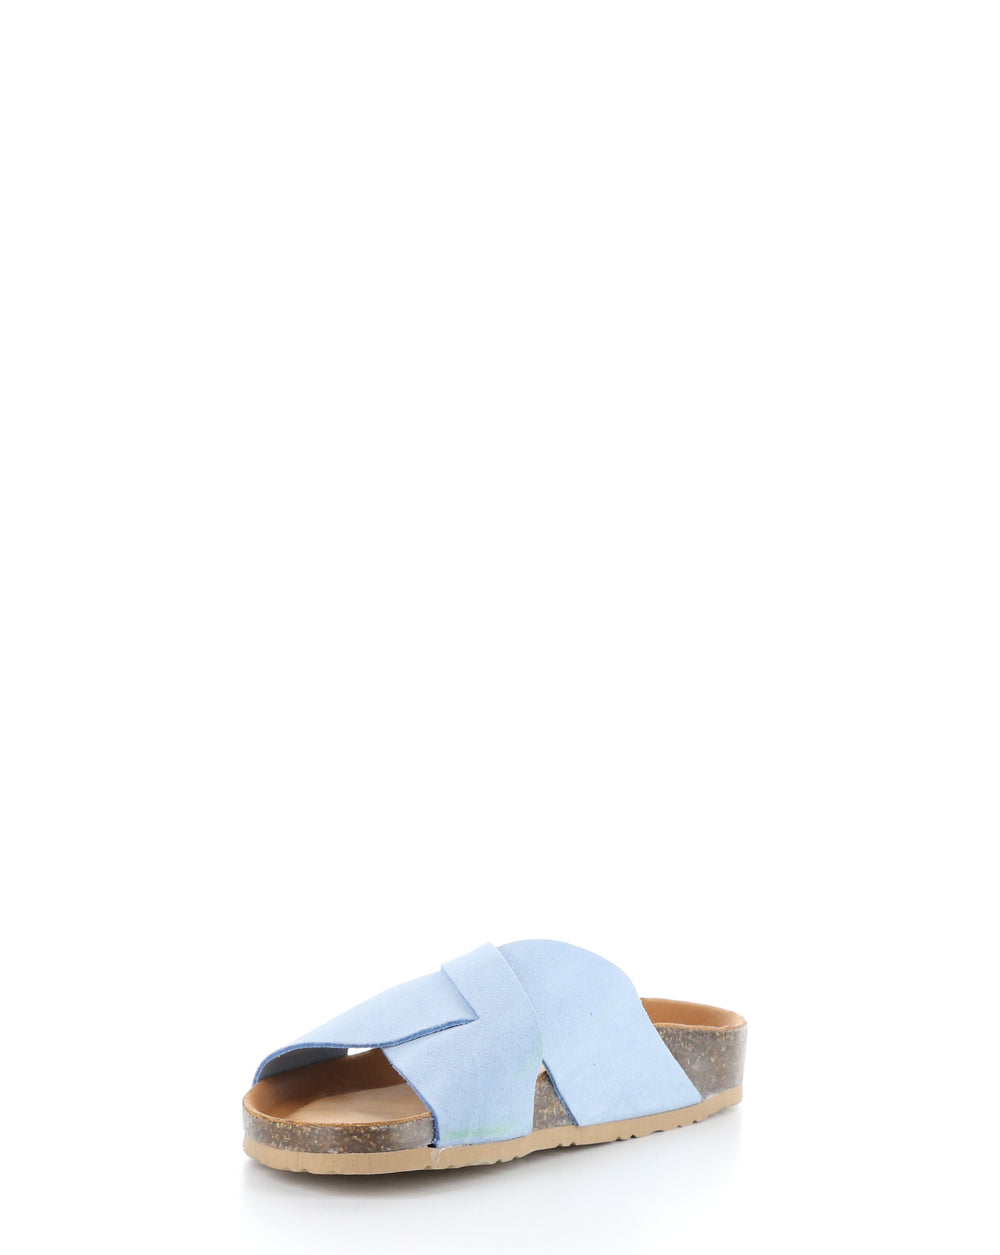 MAISIE SKY BLUE Slip-on Sandals